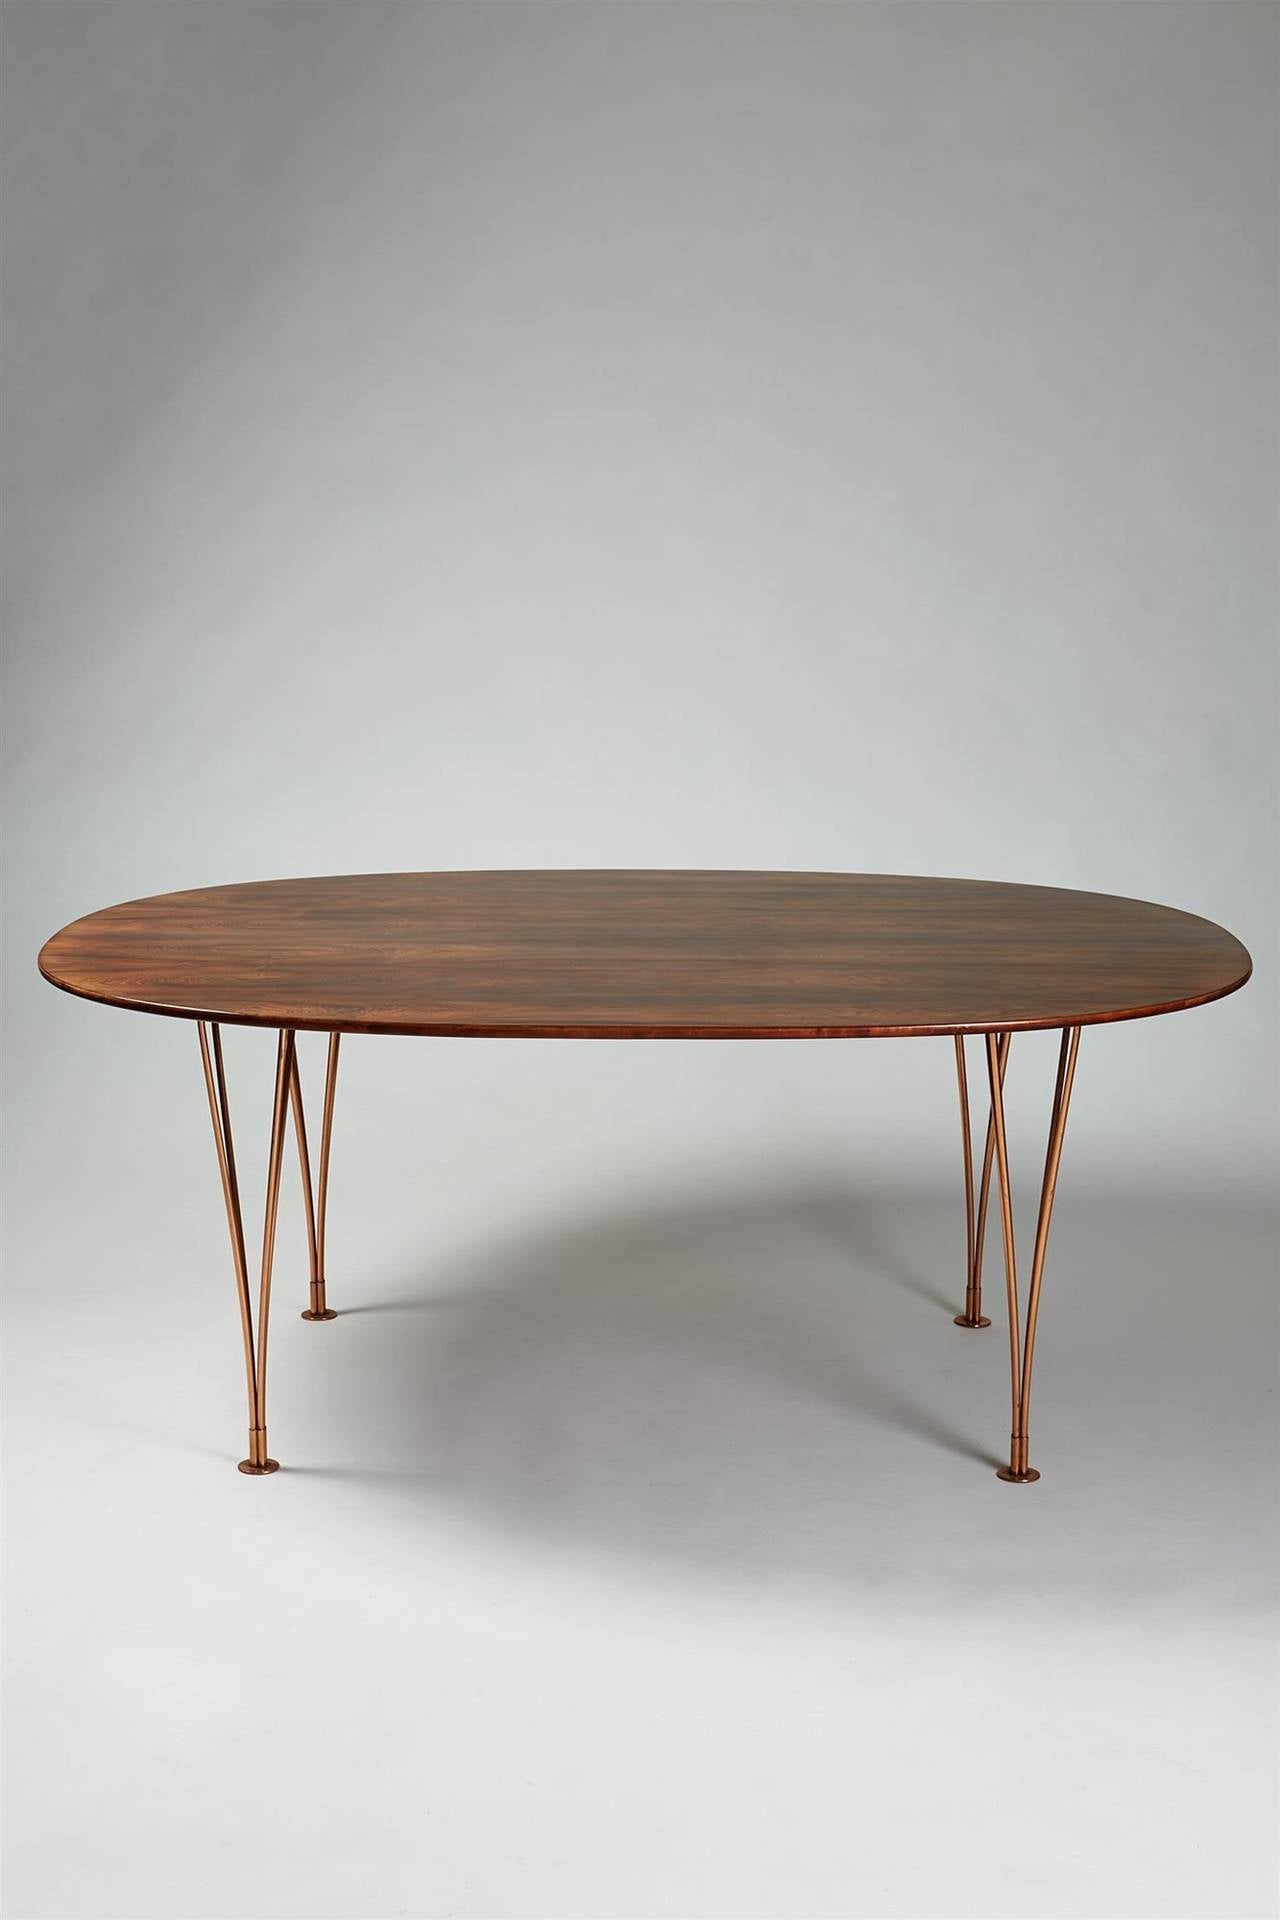 Scandinavian Modern Table Designed by Bruno Mathsson and Piet Hein, Karl Mathsson, Sweden, 1964